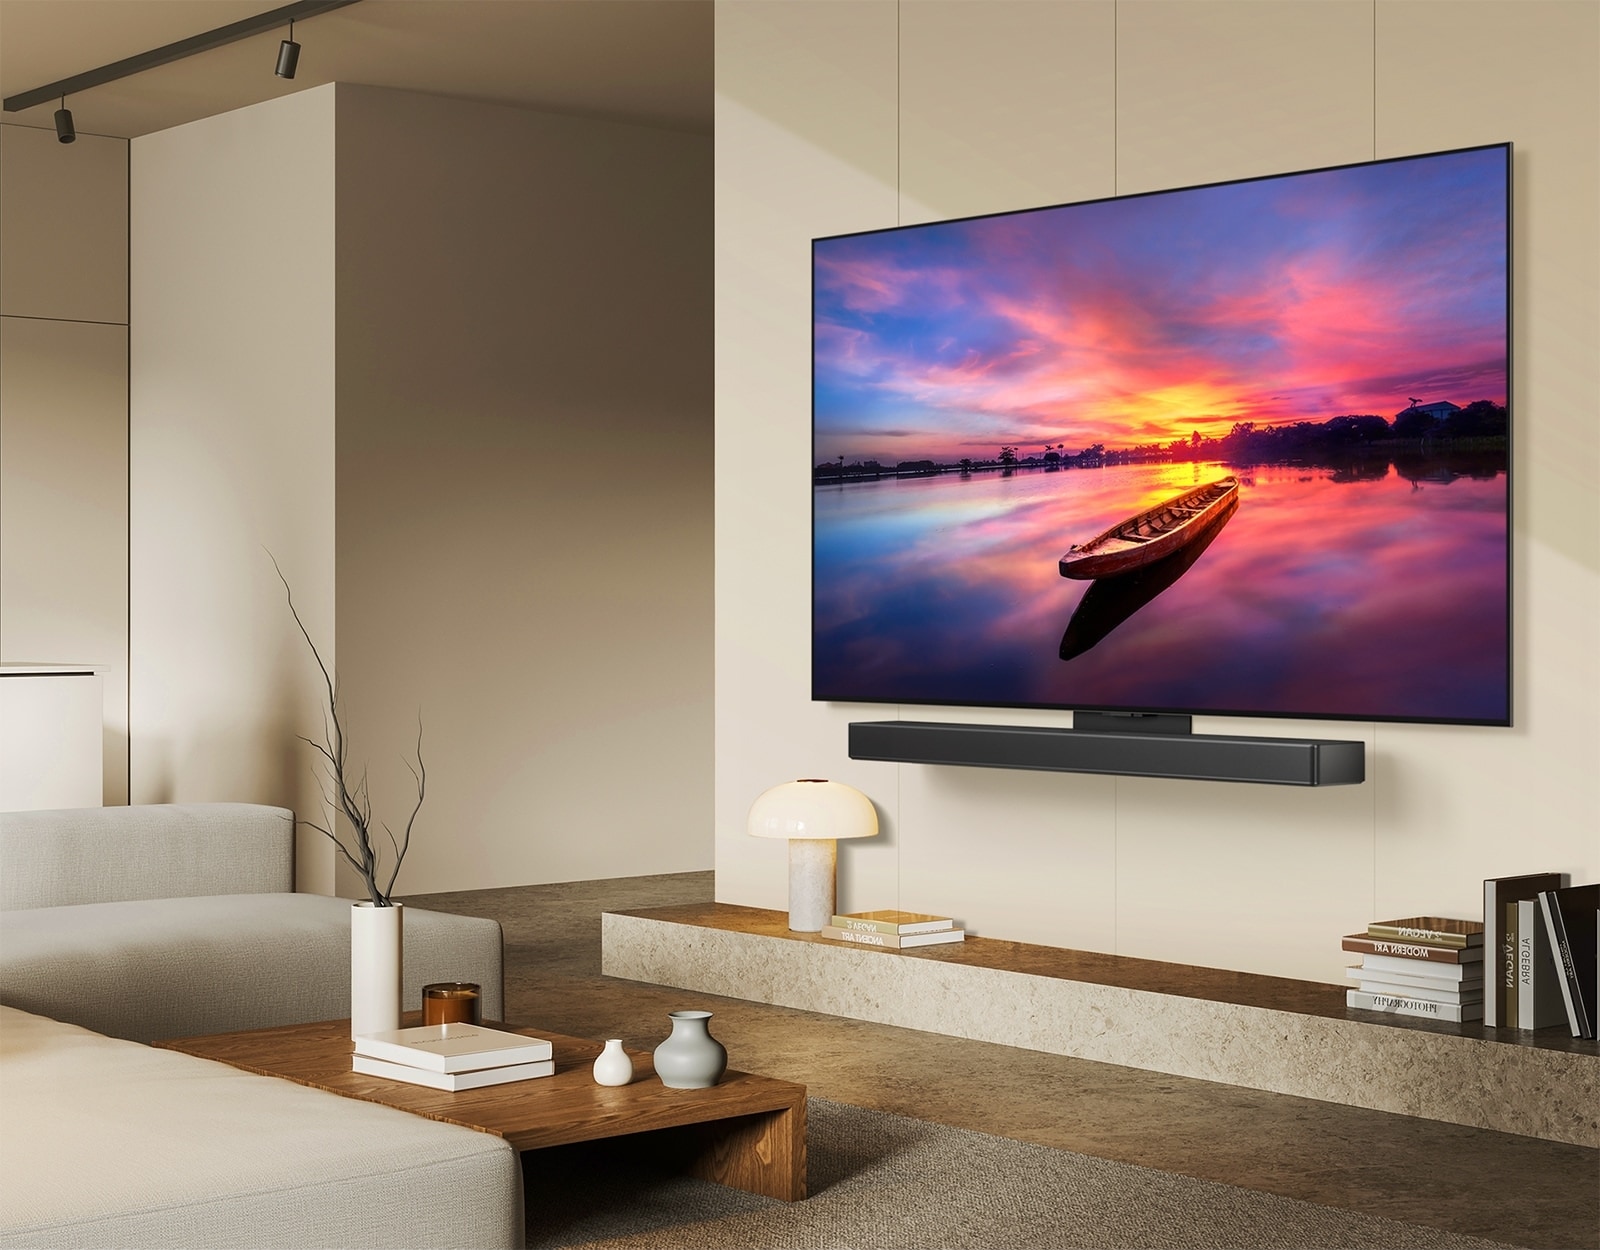 На экране телевизора LG OLED TV, OLED C4, направленного под углом 45 градусов влево, отображается красивый закат с лодкой на озере, а сам телевизор прикреплен к звуковой панели LG Soundbar с помощью кронштейна Synergy в минималистичном жилом пространстве.